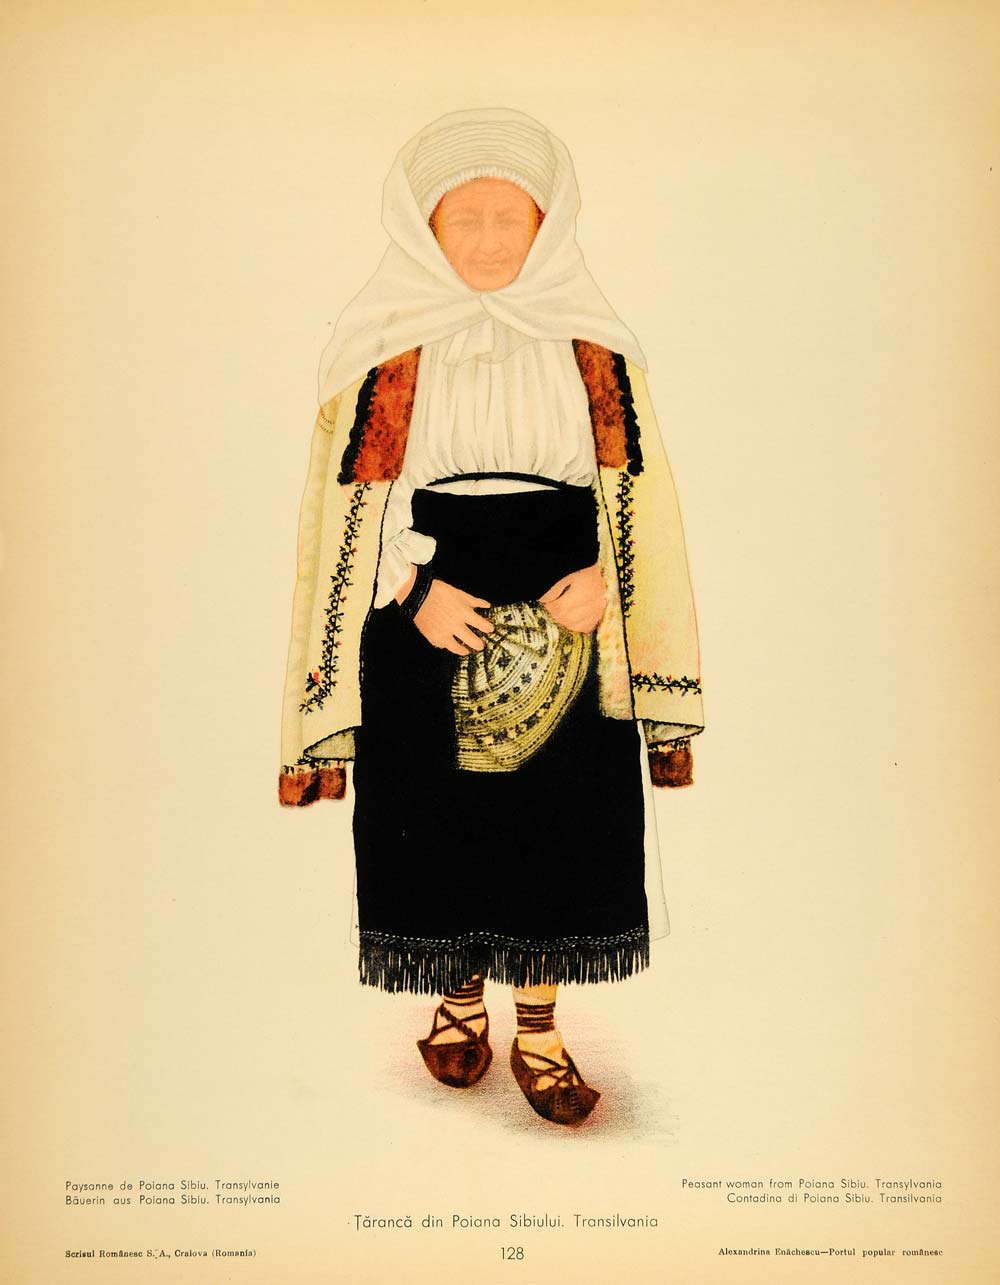 1937 Folk Costume Romanian Woman Poiana Sibiului Print - ORIGINAL COS5